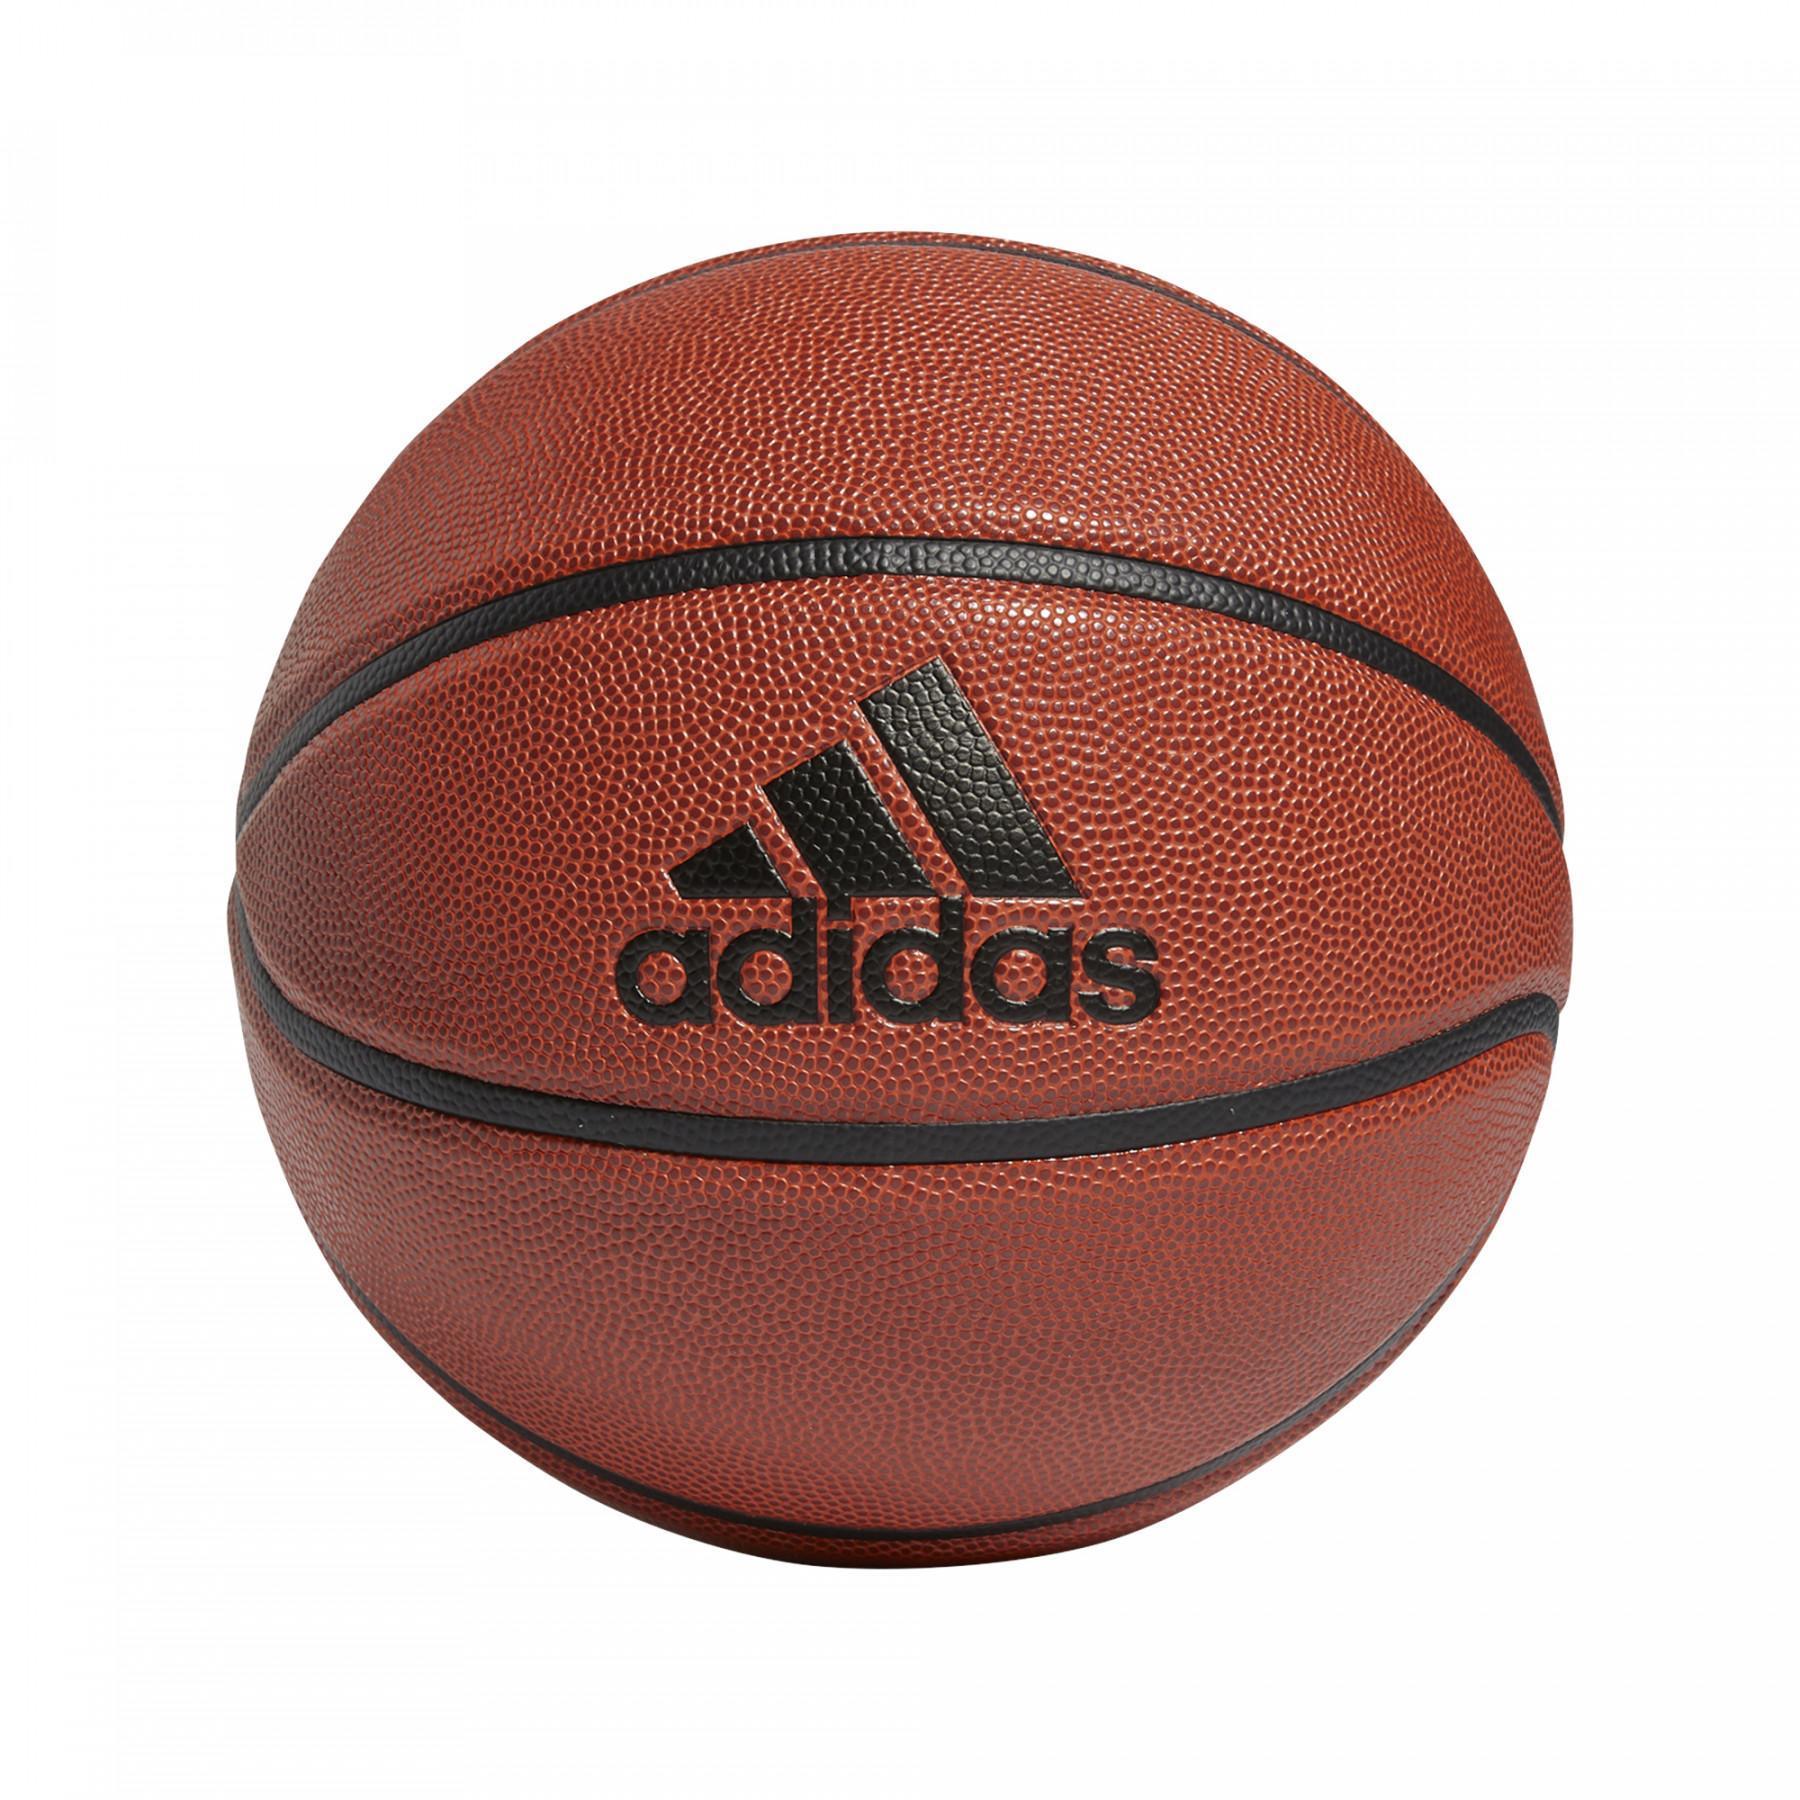 Koszykówka adidas All Court 2.0